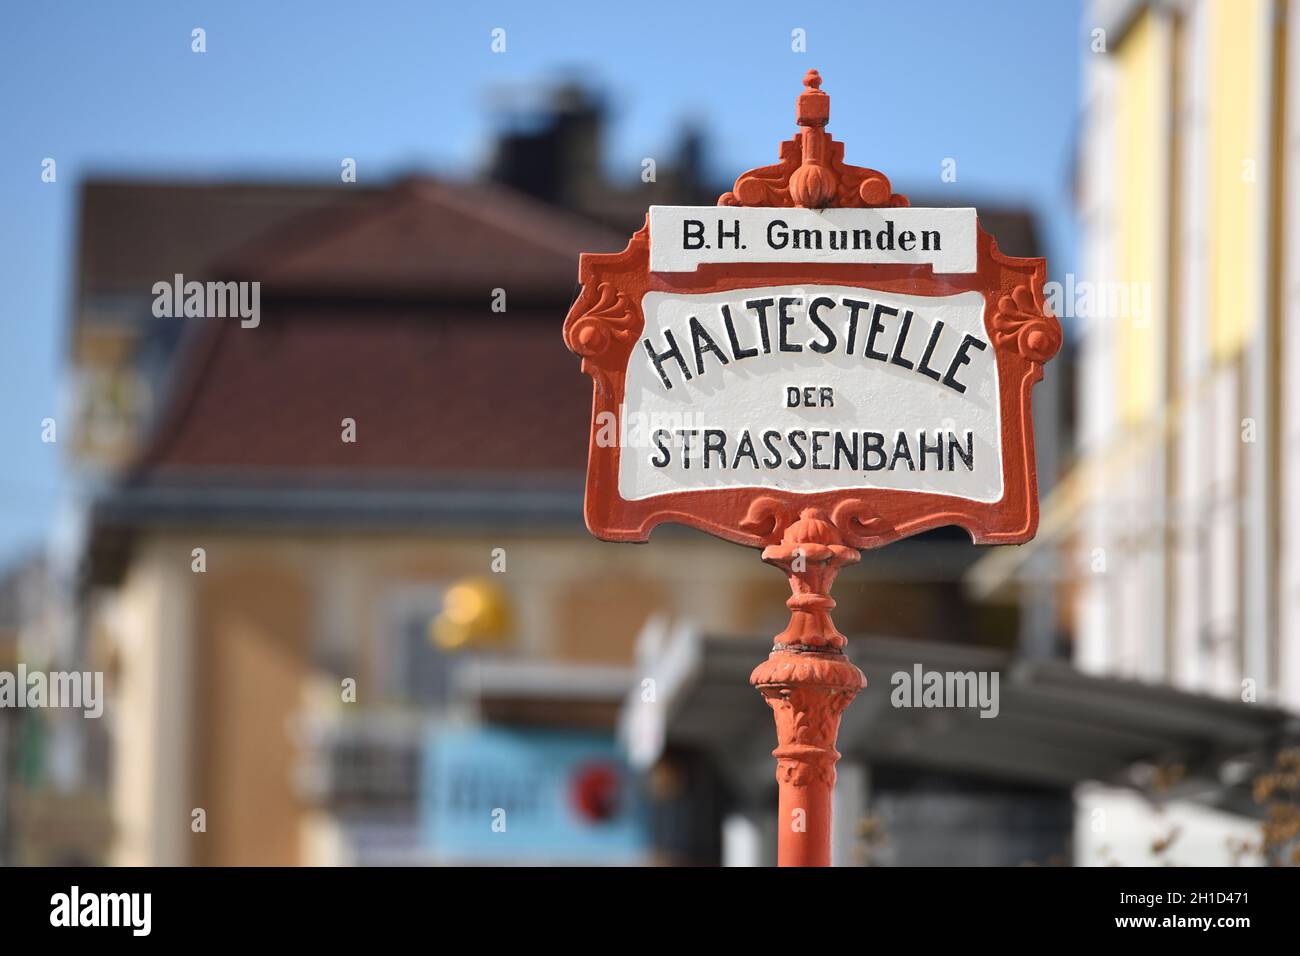 Haltestellen-Schild der Traunsee-Tram Traunseetram - Gmunden-Vorchdorf (Bezirk Gmunden). Die Traunsee-Tram (Traunseetram) Gmunden verbindet den Hauptb Stock Photo